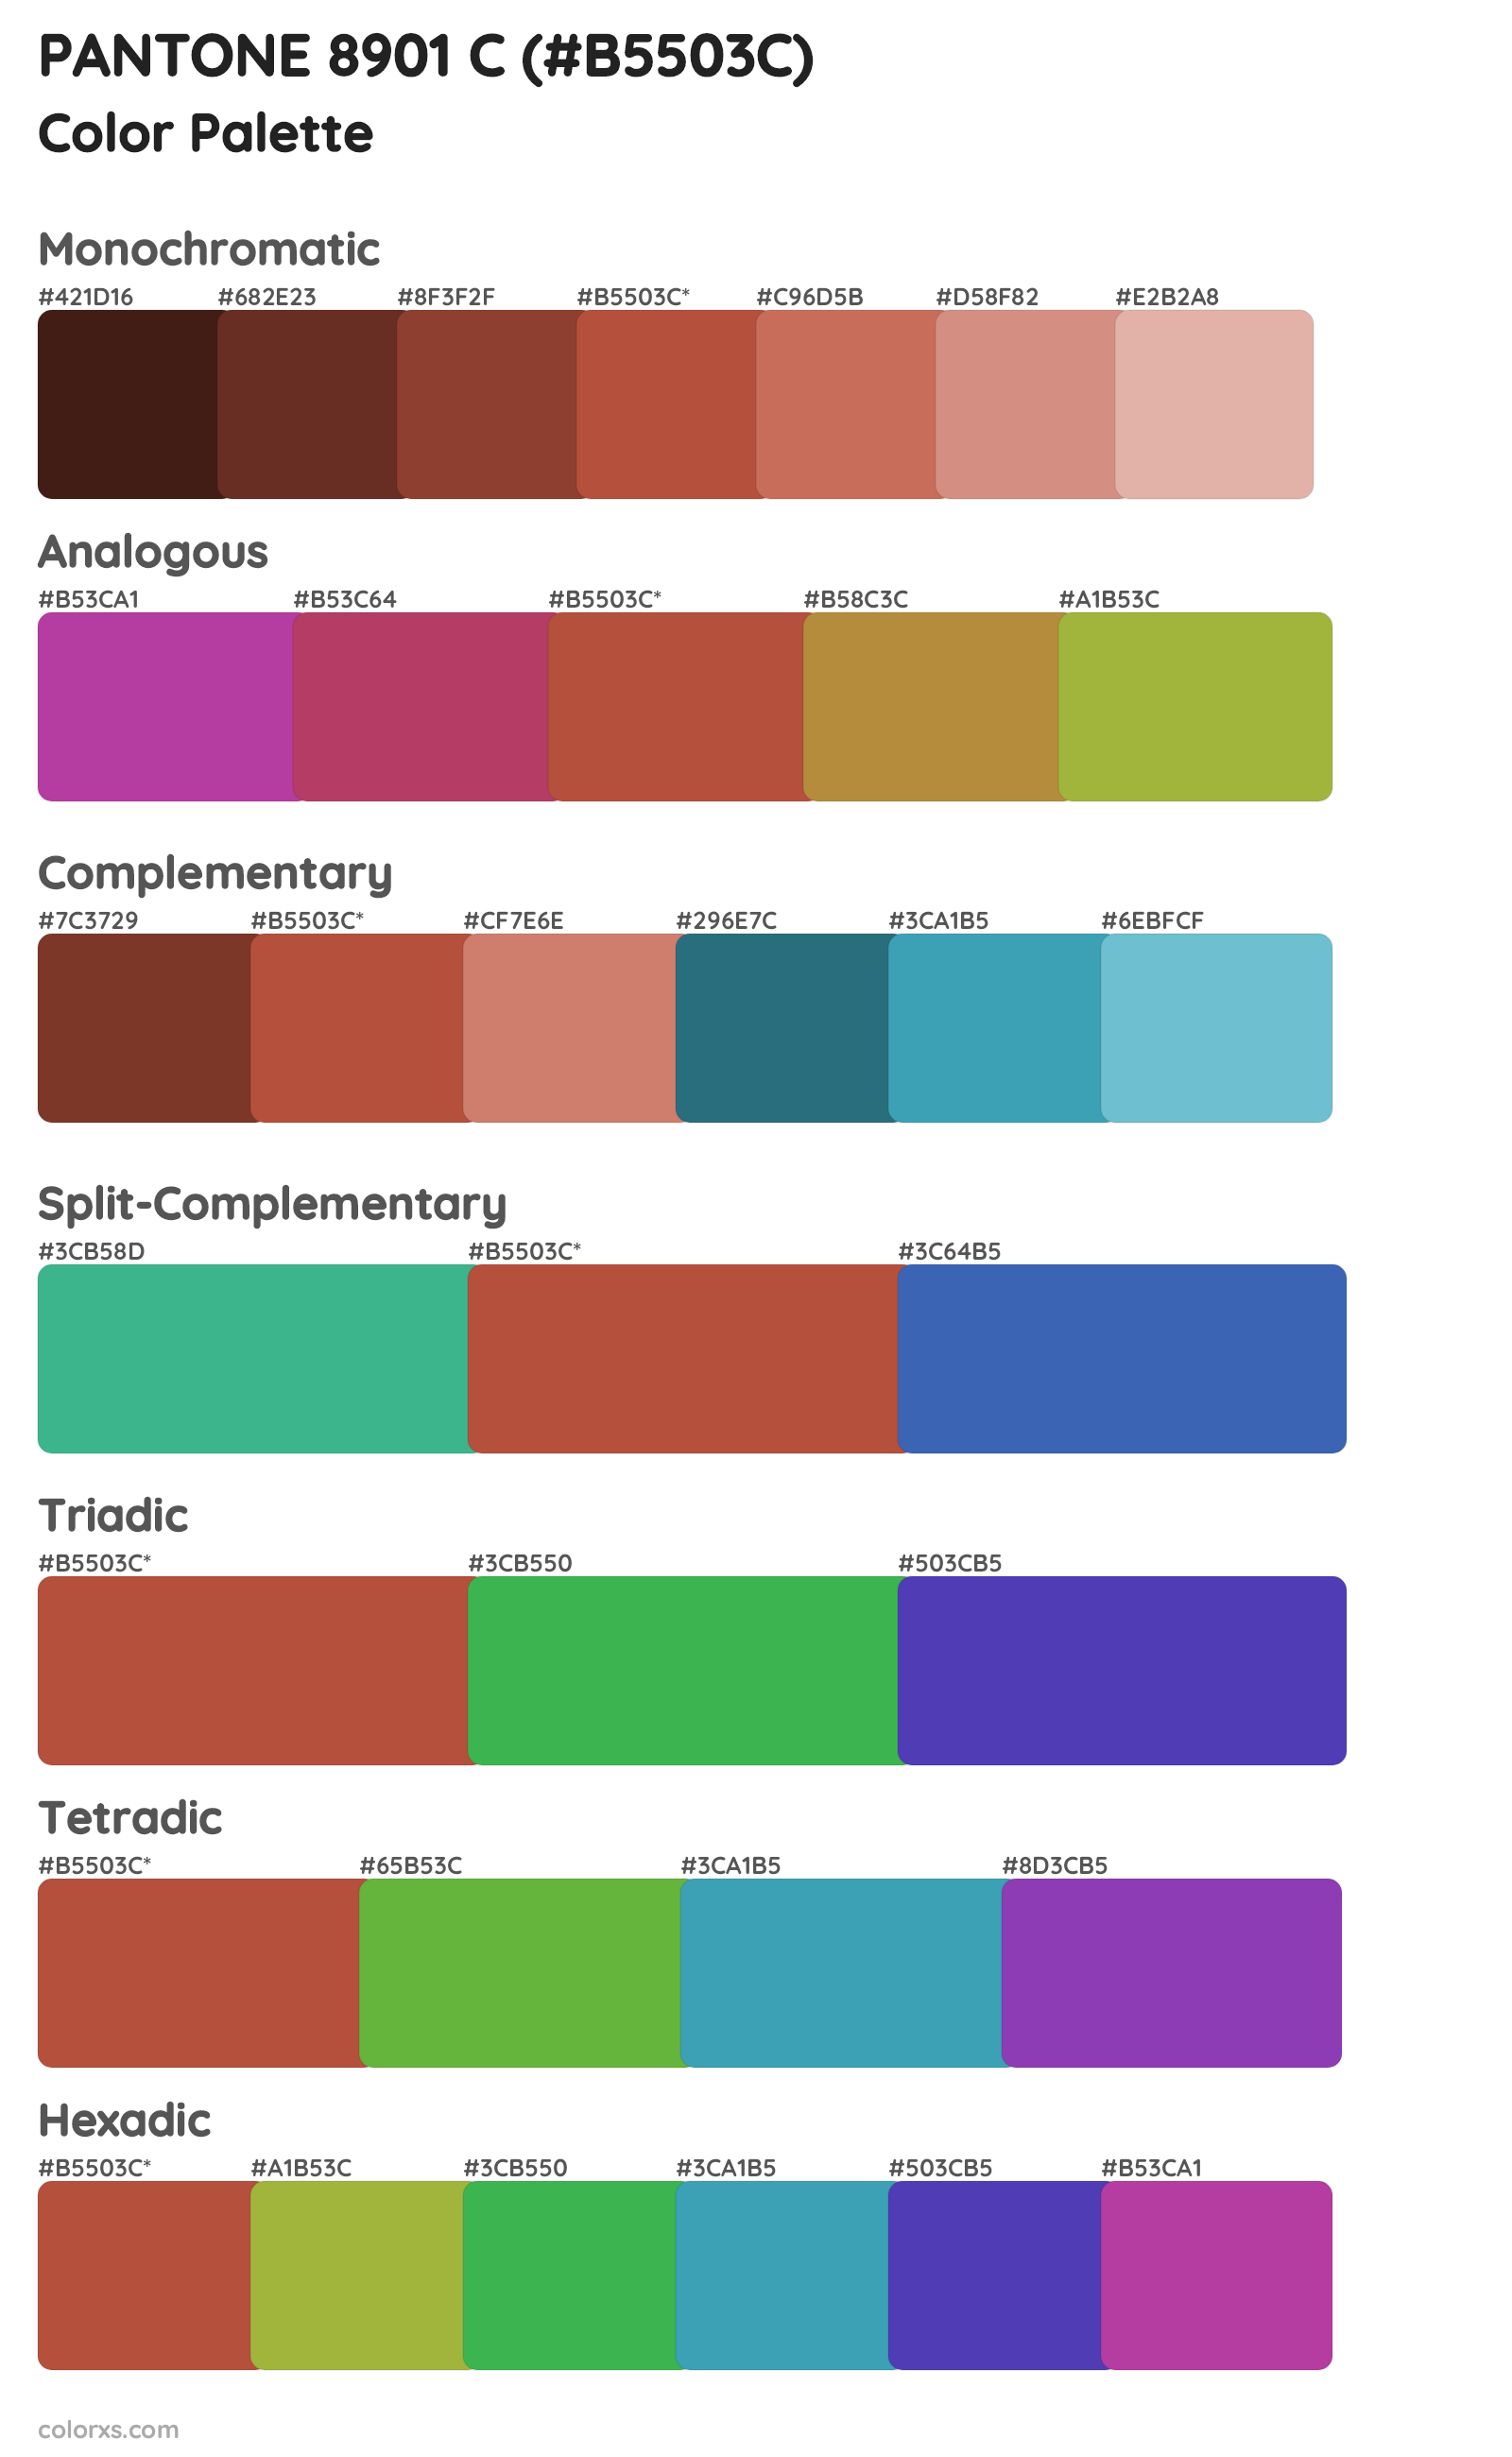 PANTONE 8901 C Color Scheme Palettes